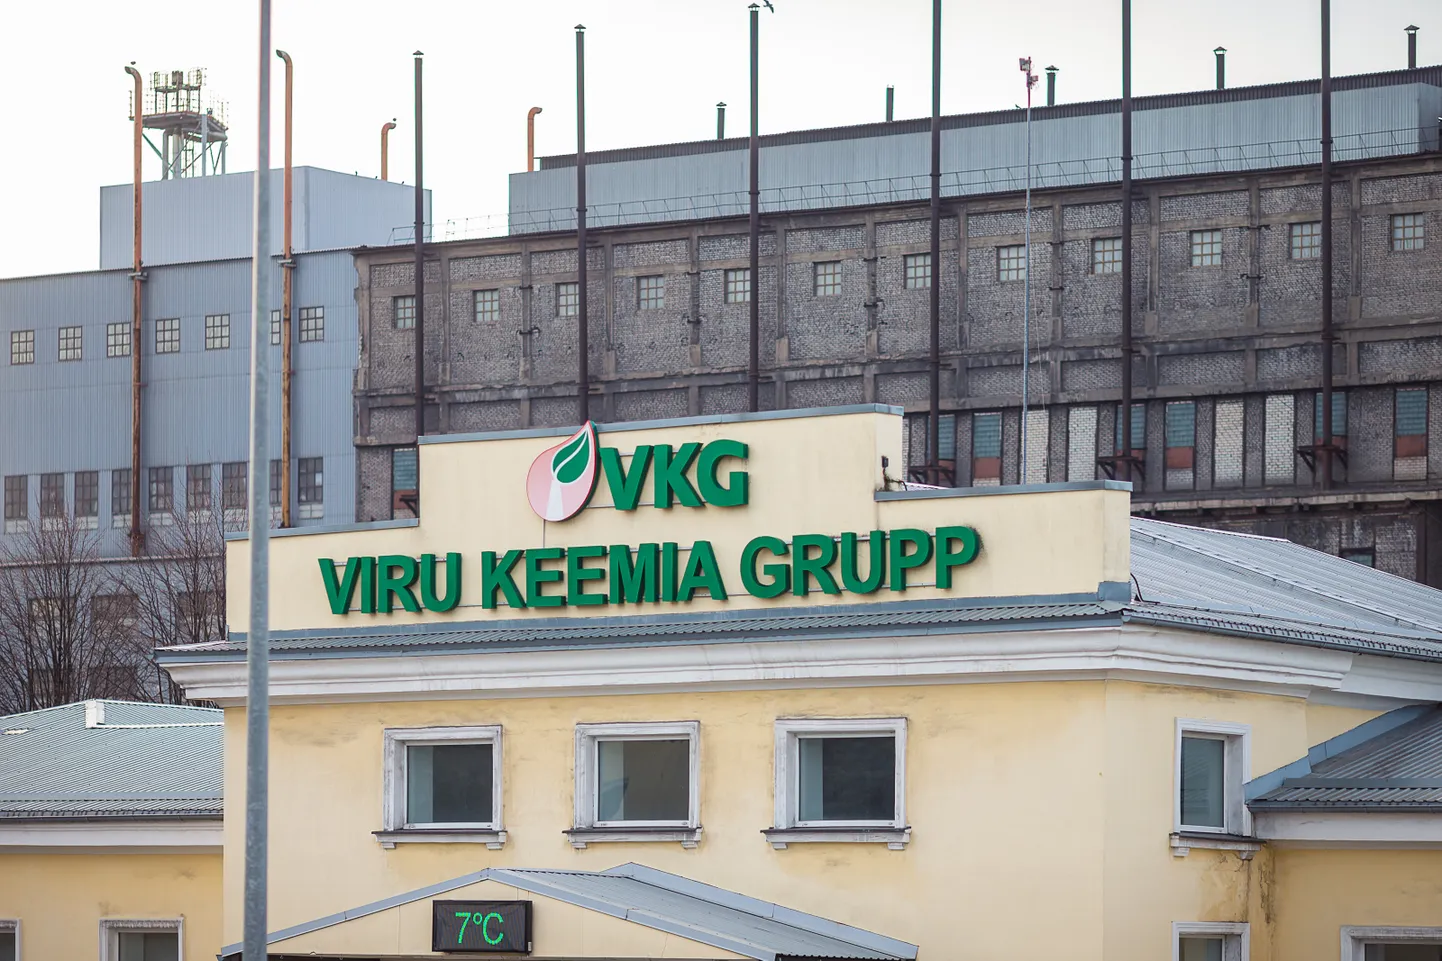 По словам Ахти Асманна, если "VKG" не сможет построить новую шахту, в 2027 году заводы масел в Кохтла-Ярве остановятся.